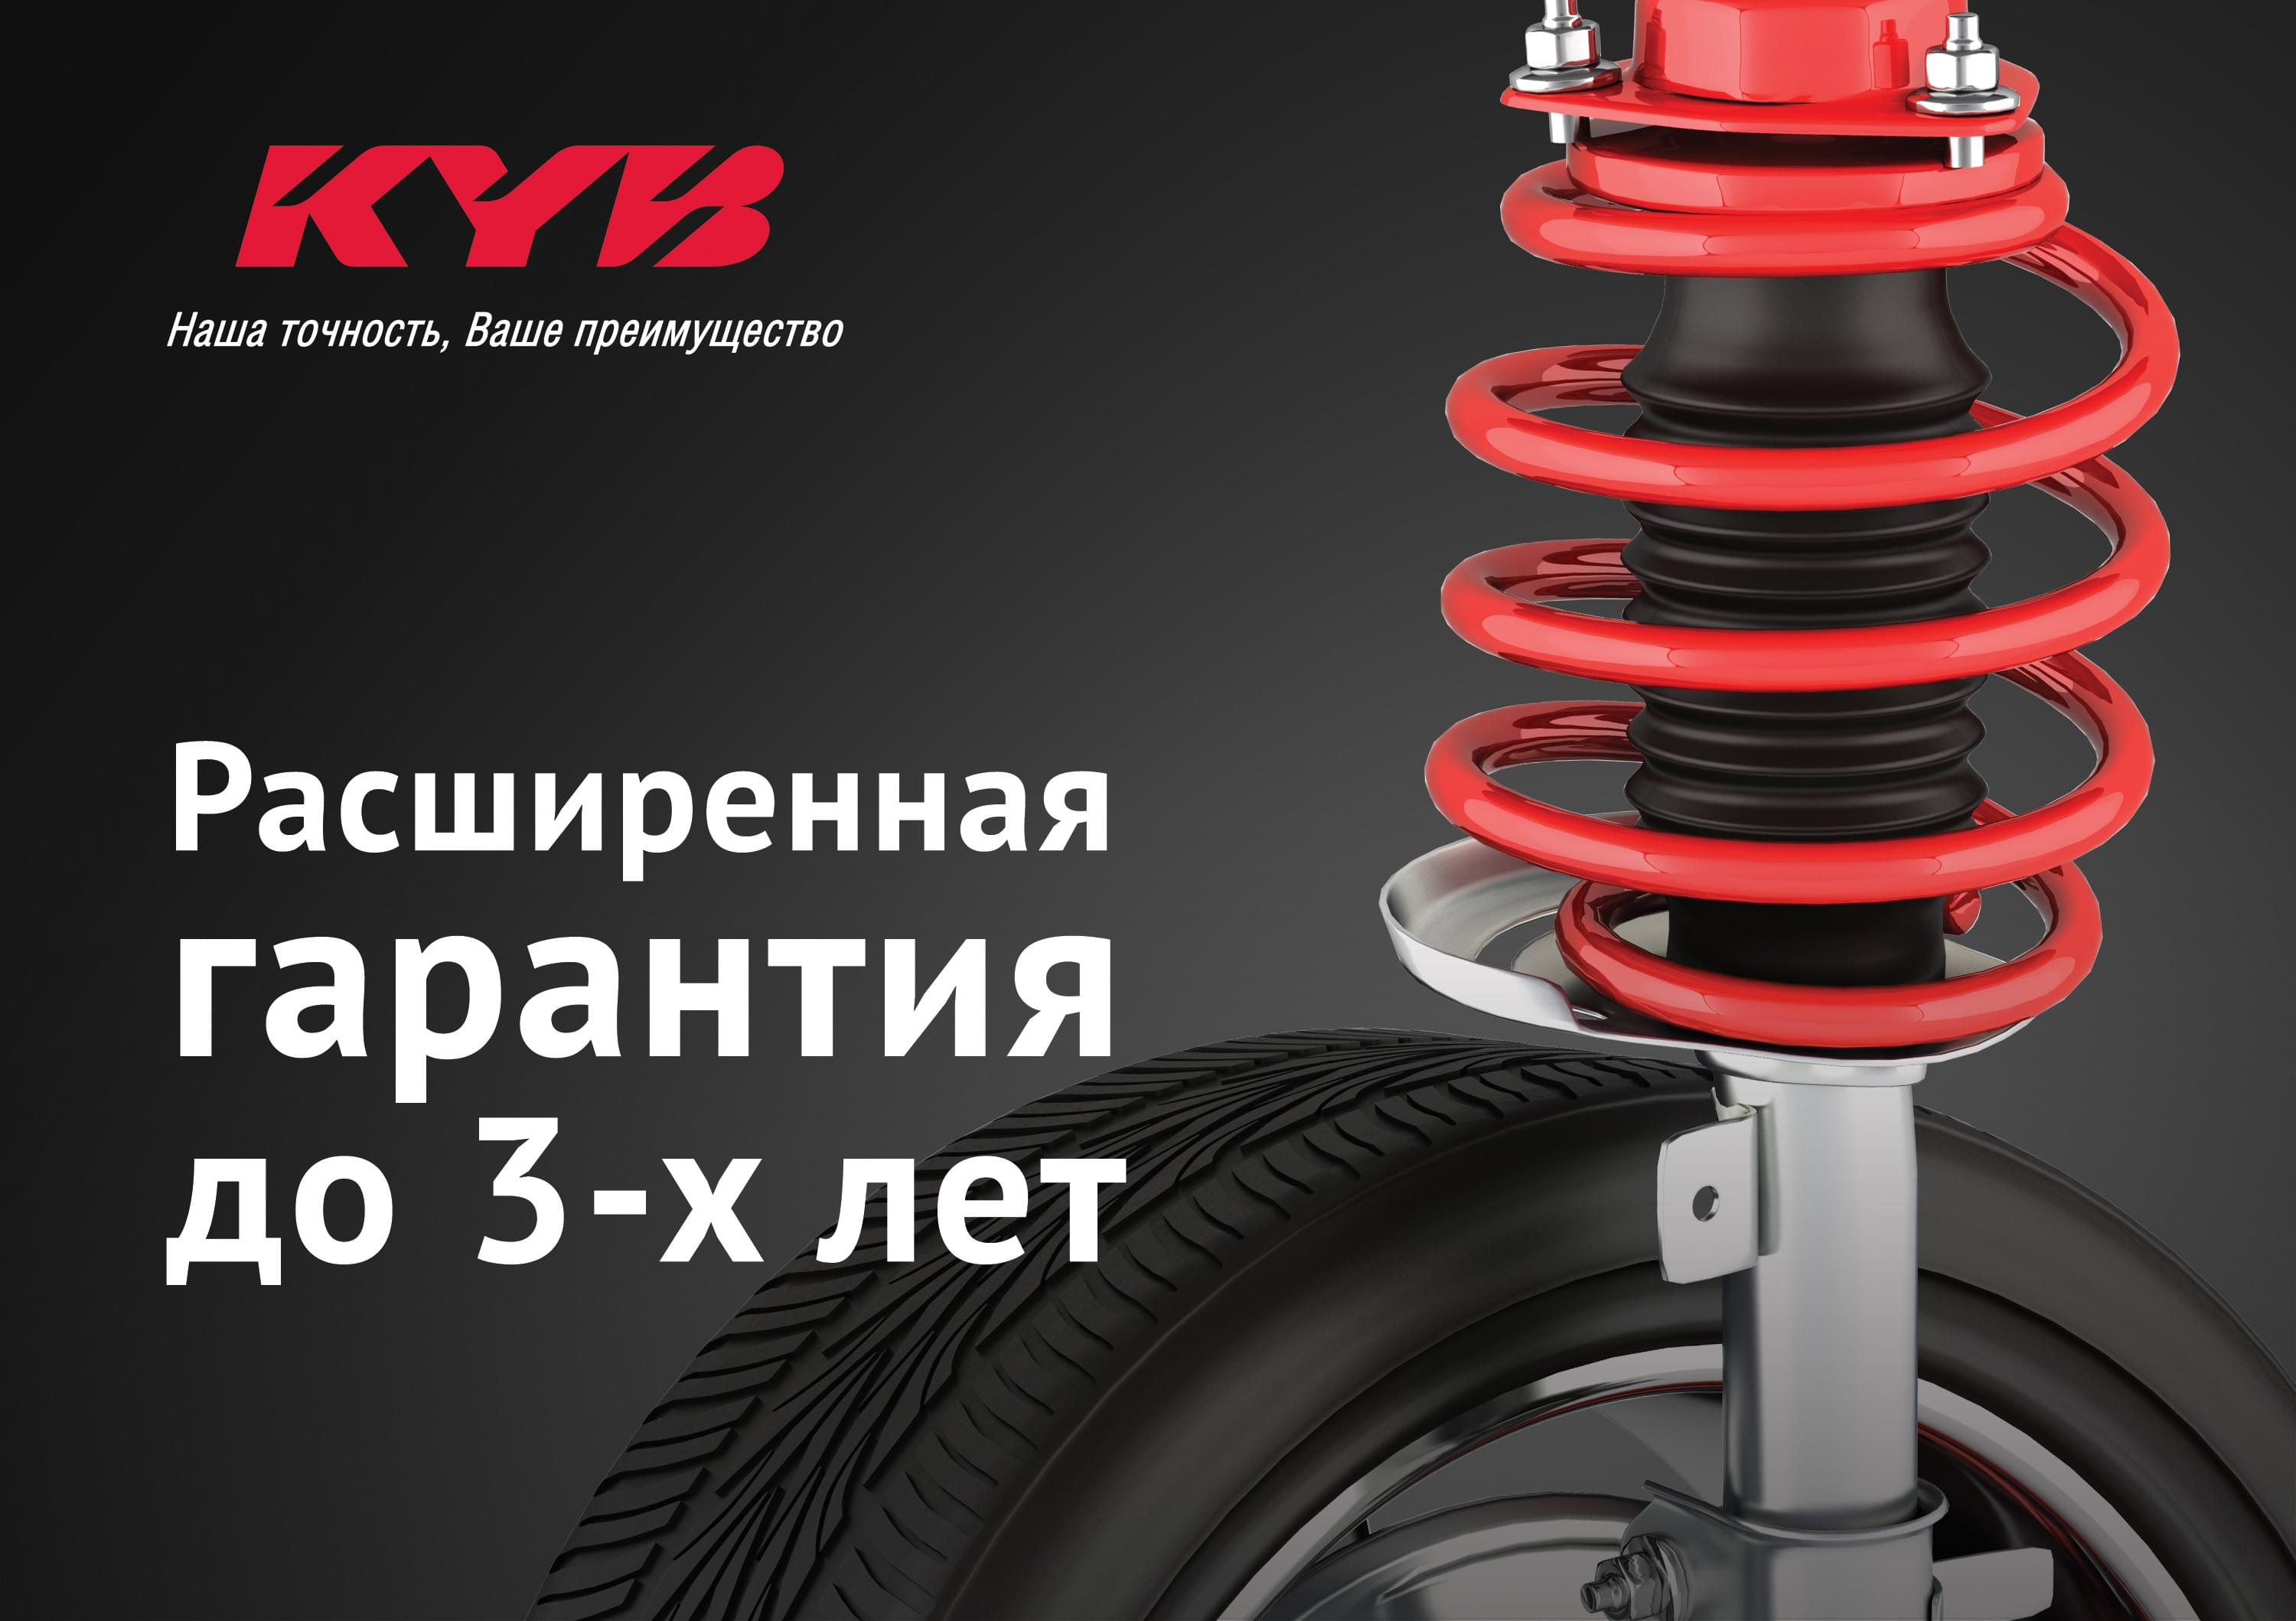 KYB увеличивает гарантию на амортизаторы и пружины KYB до 3-х лет и 80 000 км пробега!